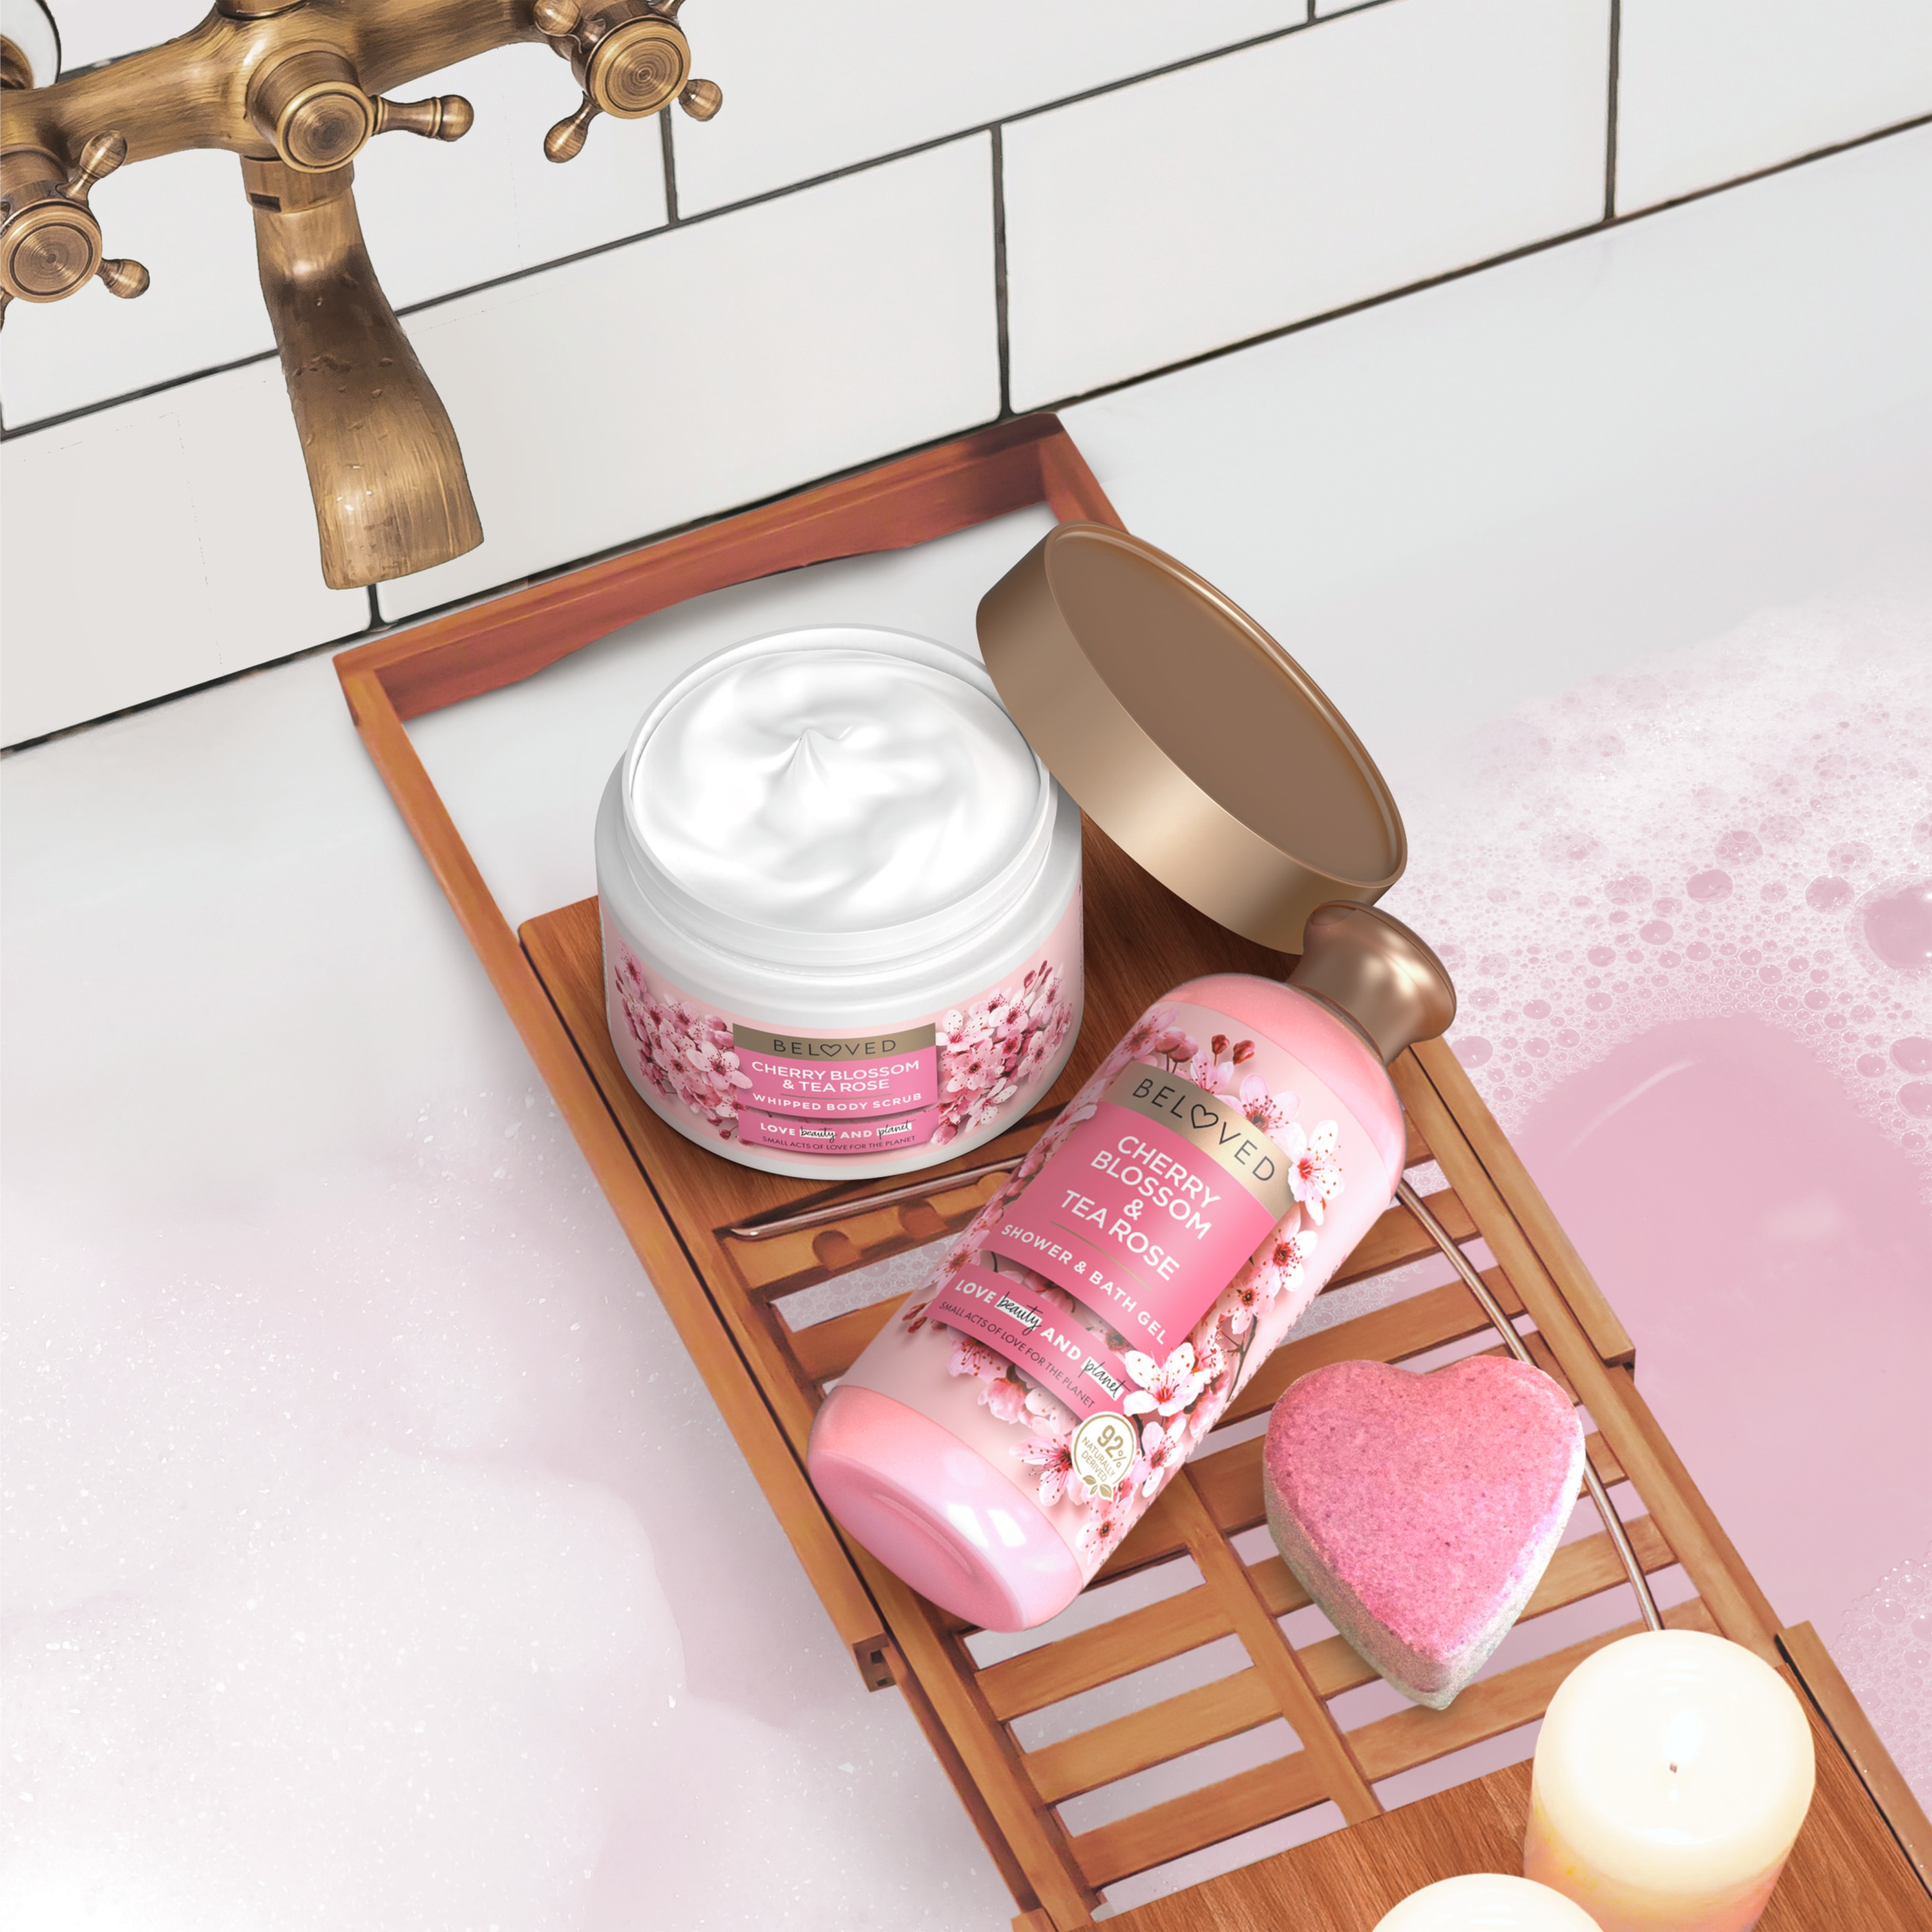 Cherry Blossom & Tea Rose Bath & Shower Gel